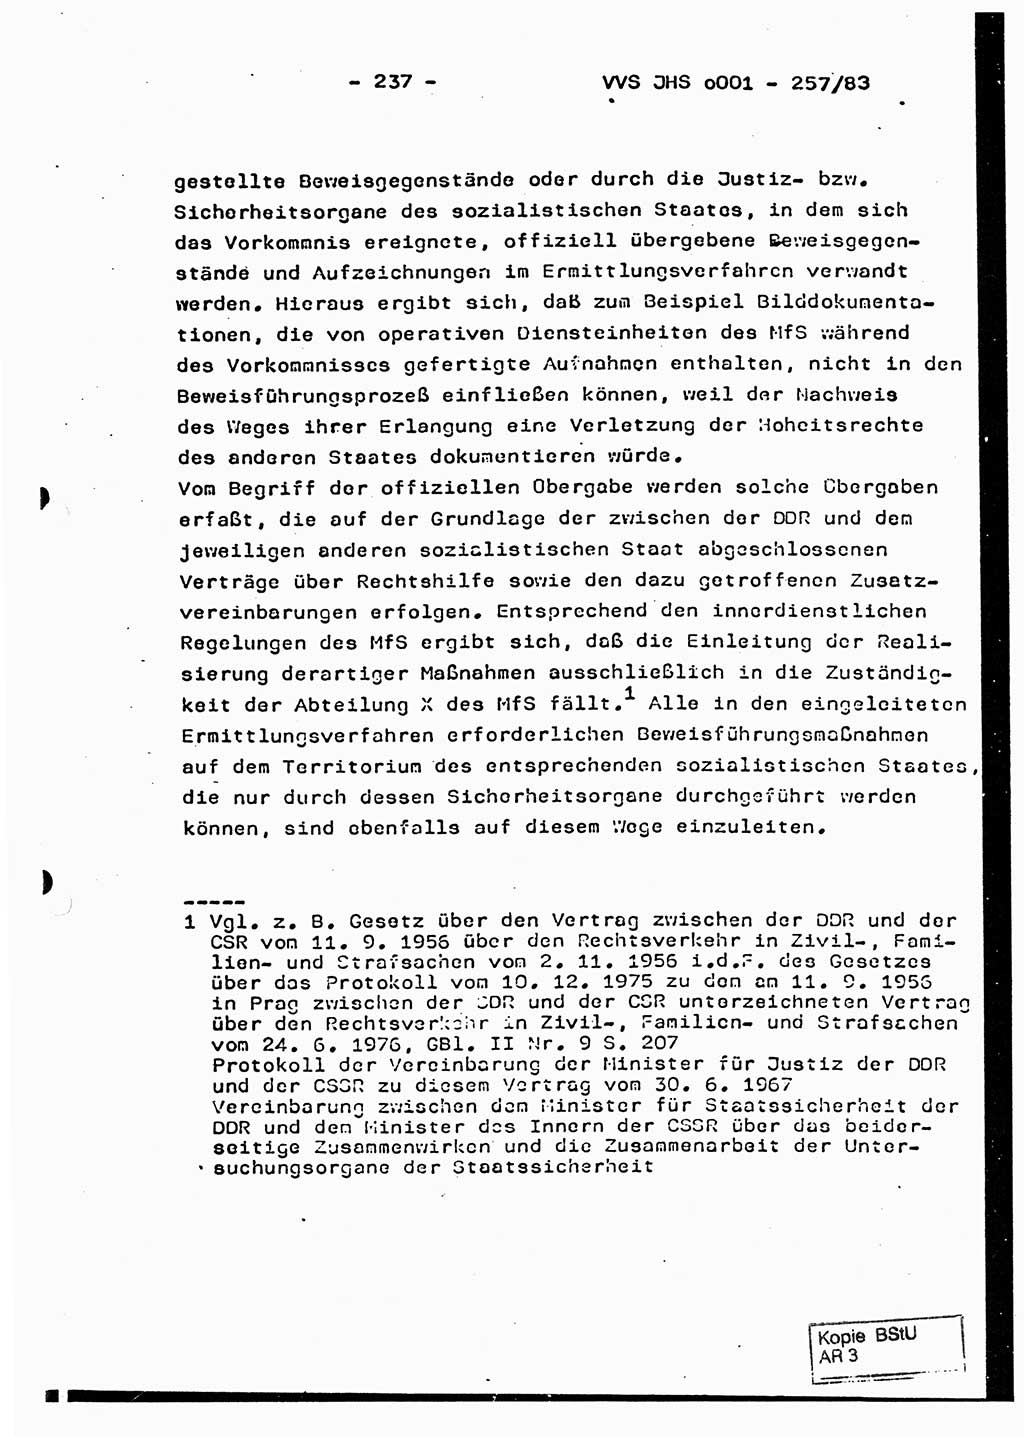 Dissertation, Oberst Helmut Lubas (BV Mdg.), Oberstleutnant Manfred Eschberger (HA IX), Oberleutnant Hans-Jürgen Ludwig (JHS), Ministerium für Staatssicherheit (MfS) [Deutsche Demokratische Republik (DDR)], Juristische Hochschule (JHS), Vertrauliche Verschlußsache (VVS) o001-257/83, Potsdam 1983, Seite 237 (Diss. MfS DDR JHS VVS o001-257/83 1983, S. 237)